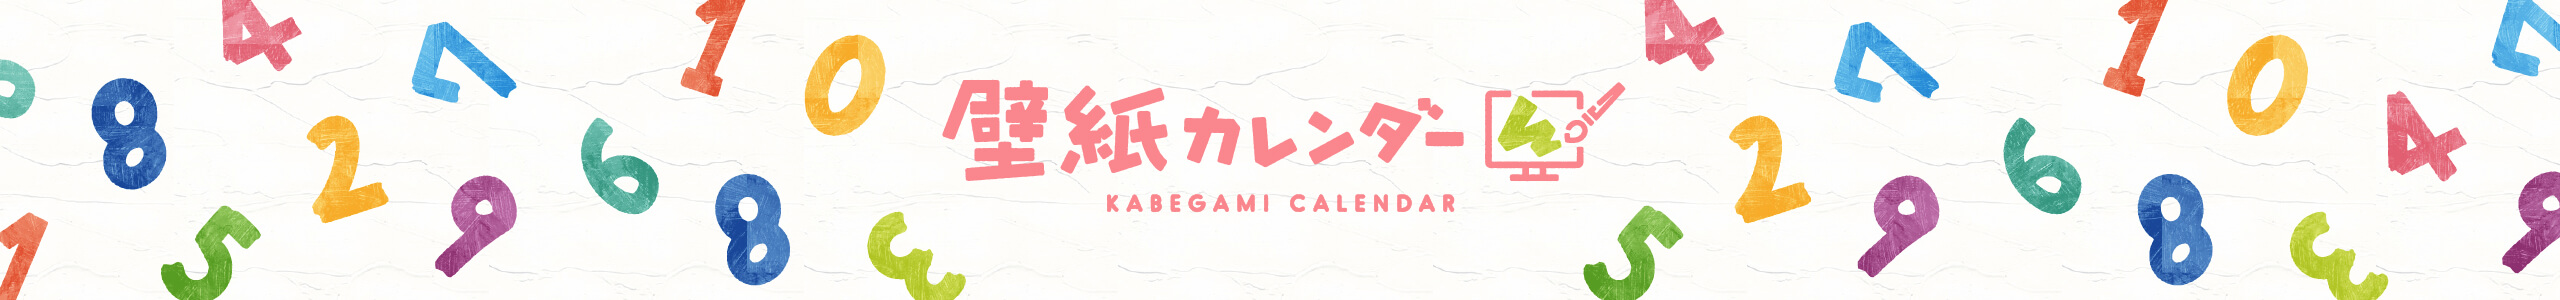 壁紙カレンダー KABEGAMI CALENDAR